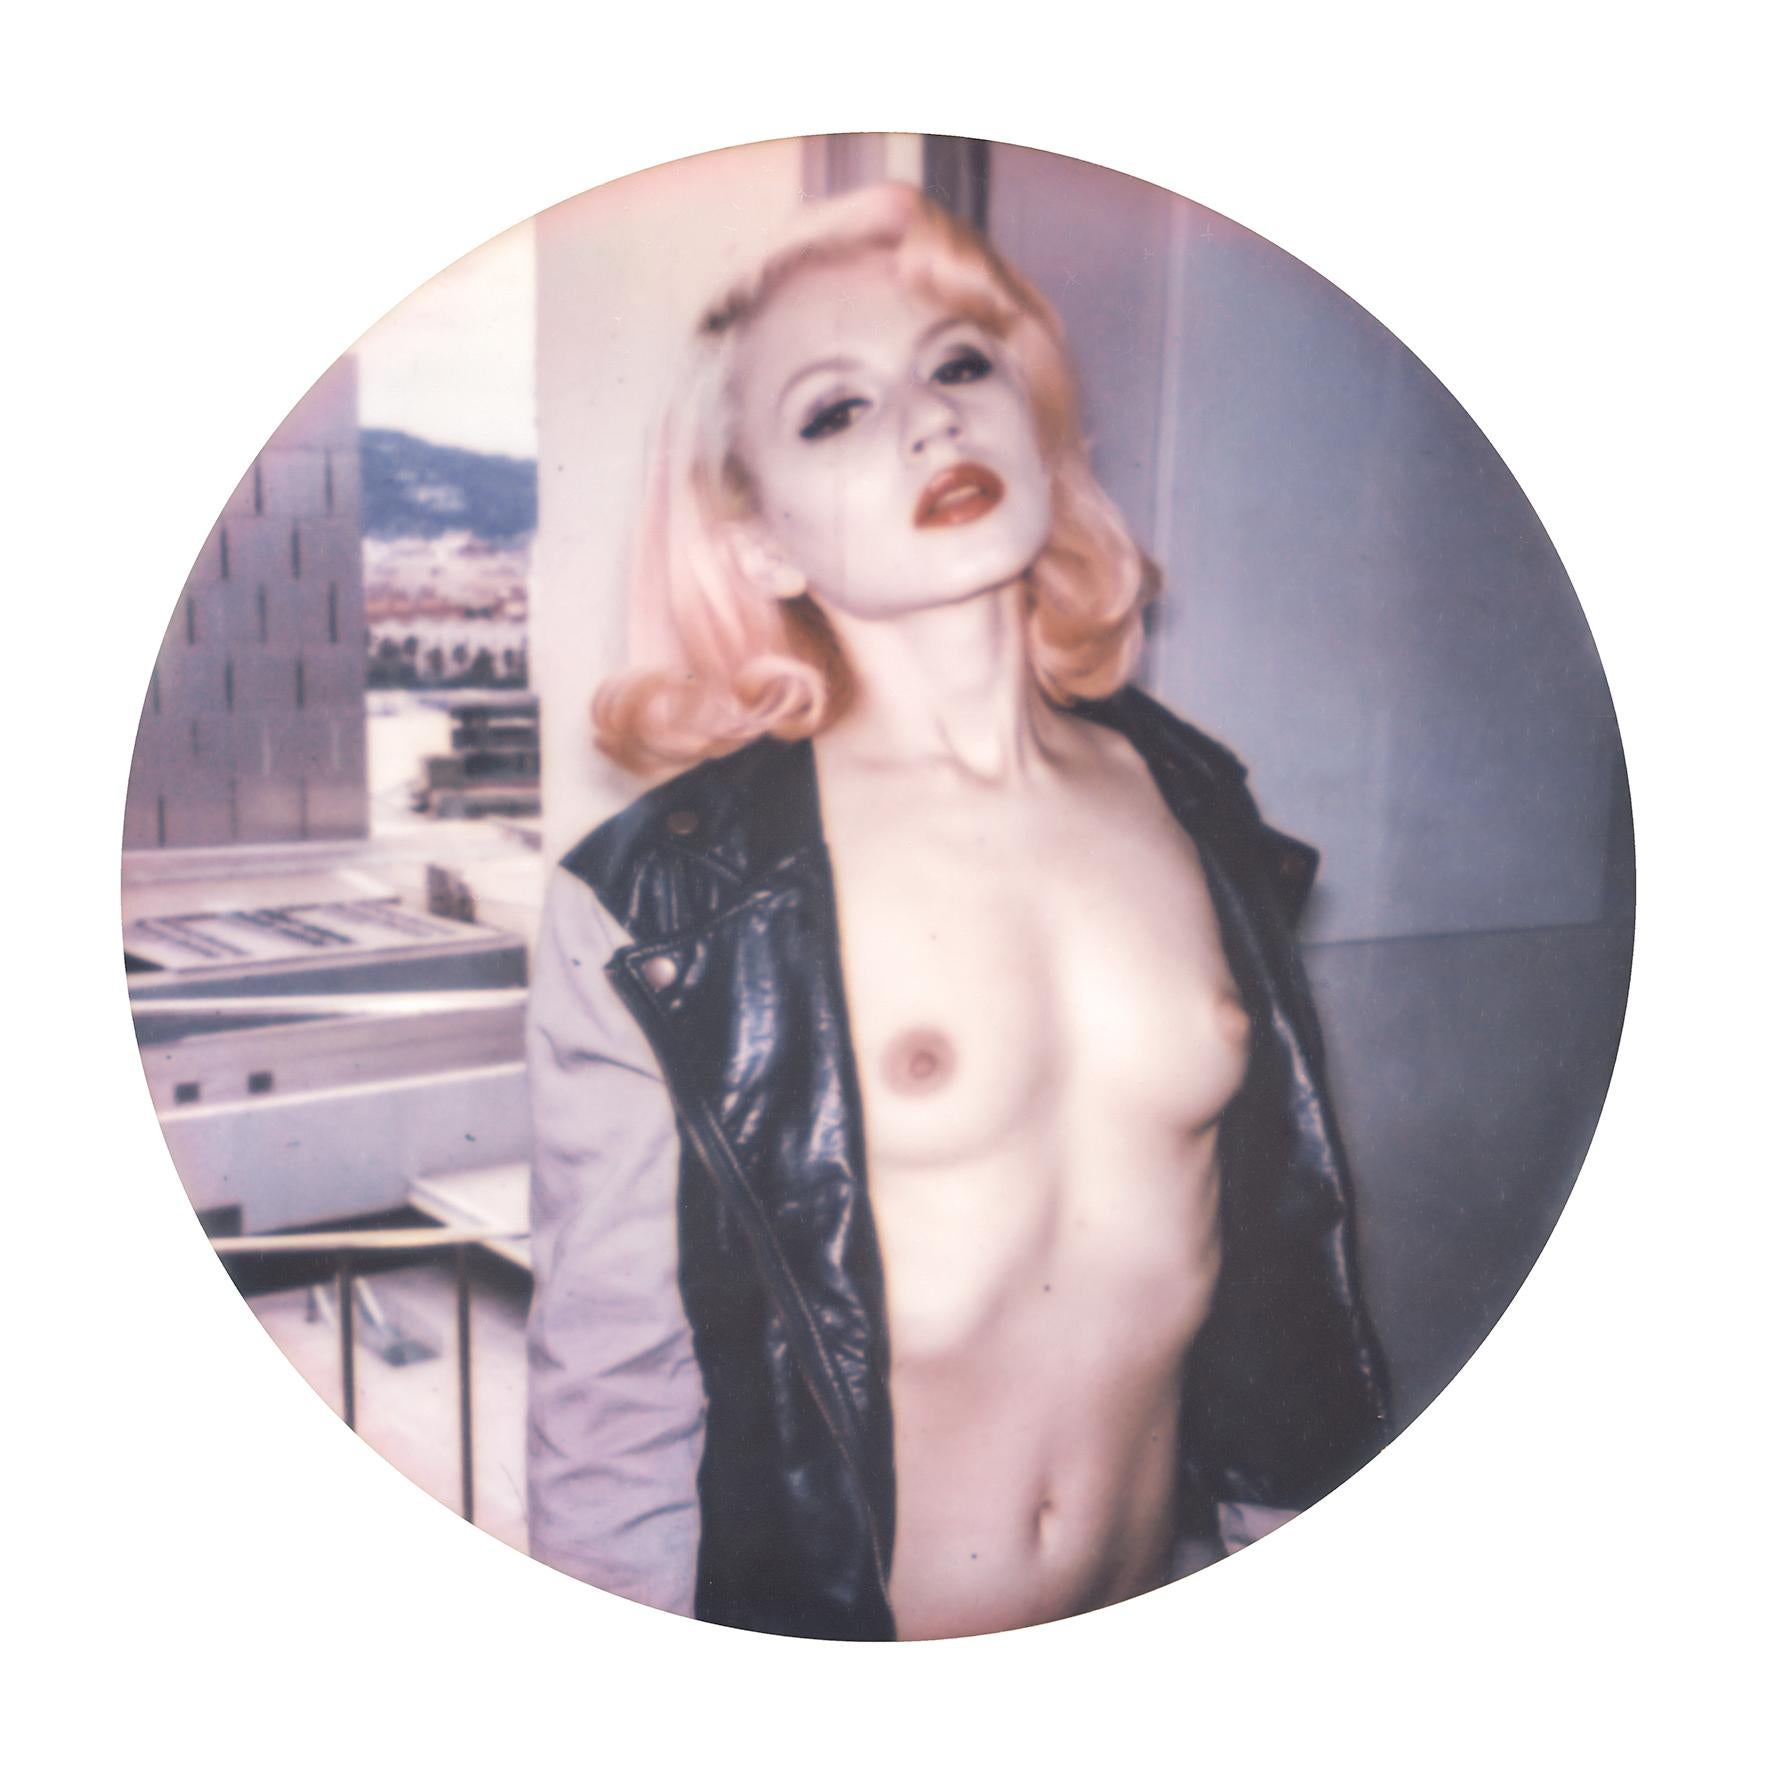 Miss Eris #20 - mounted - Contemporary, Polaroid, 21st Century, Nude, Women